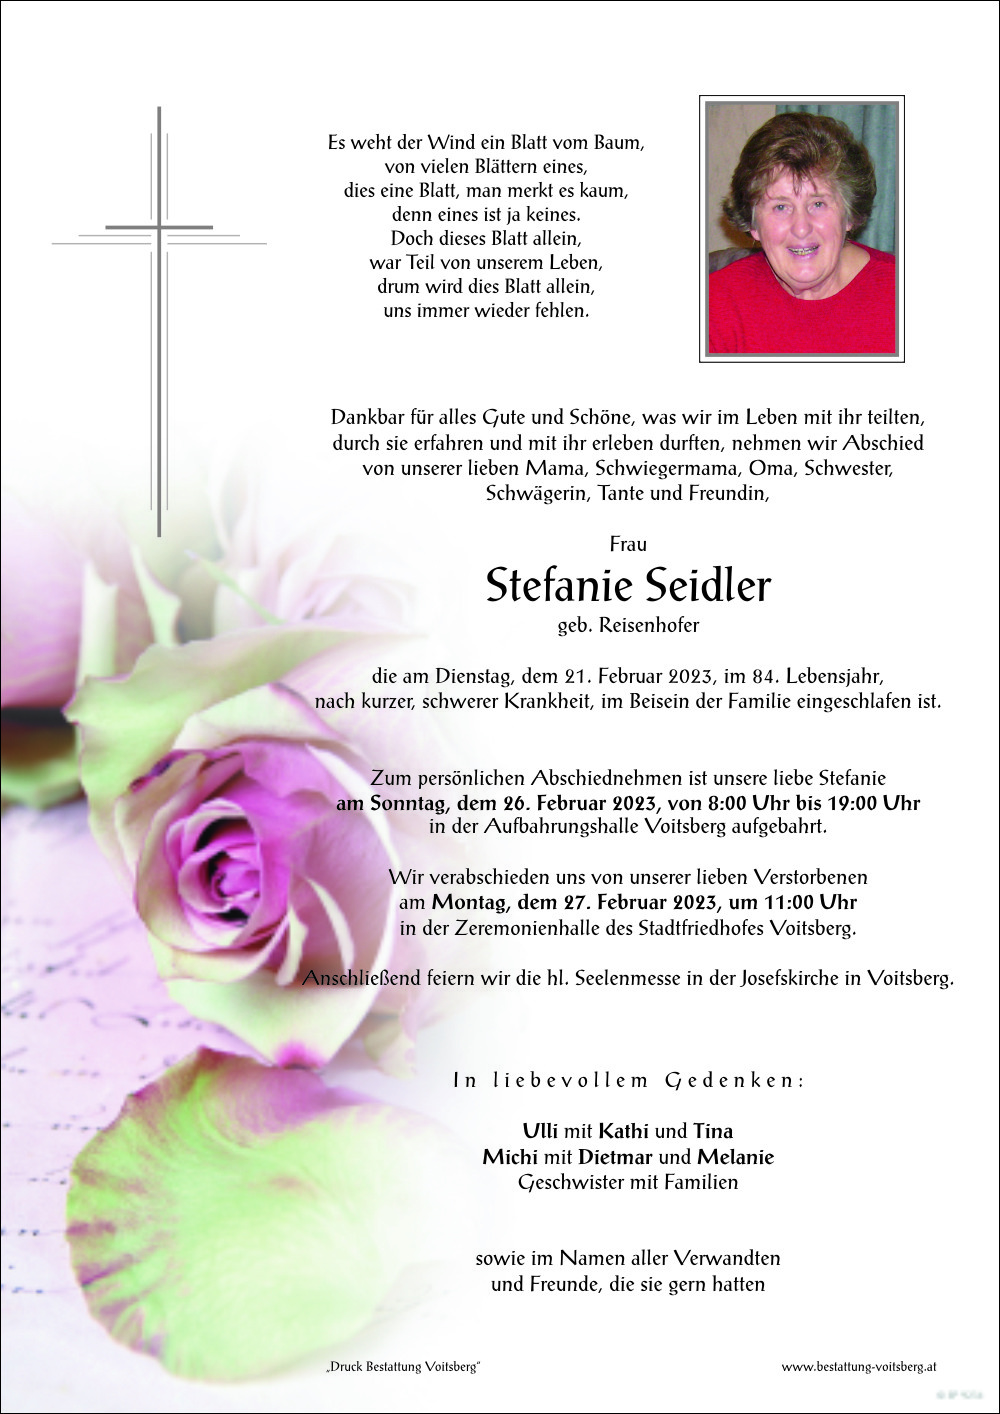 Stefanie Seidler